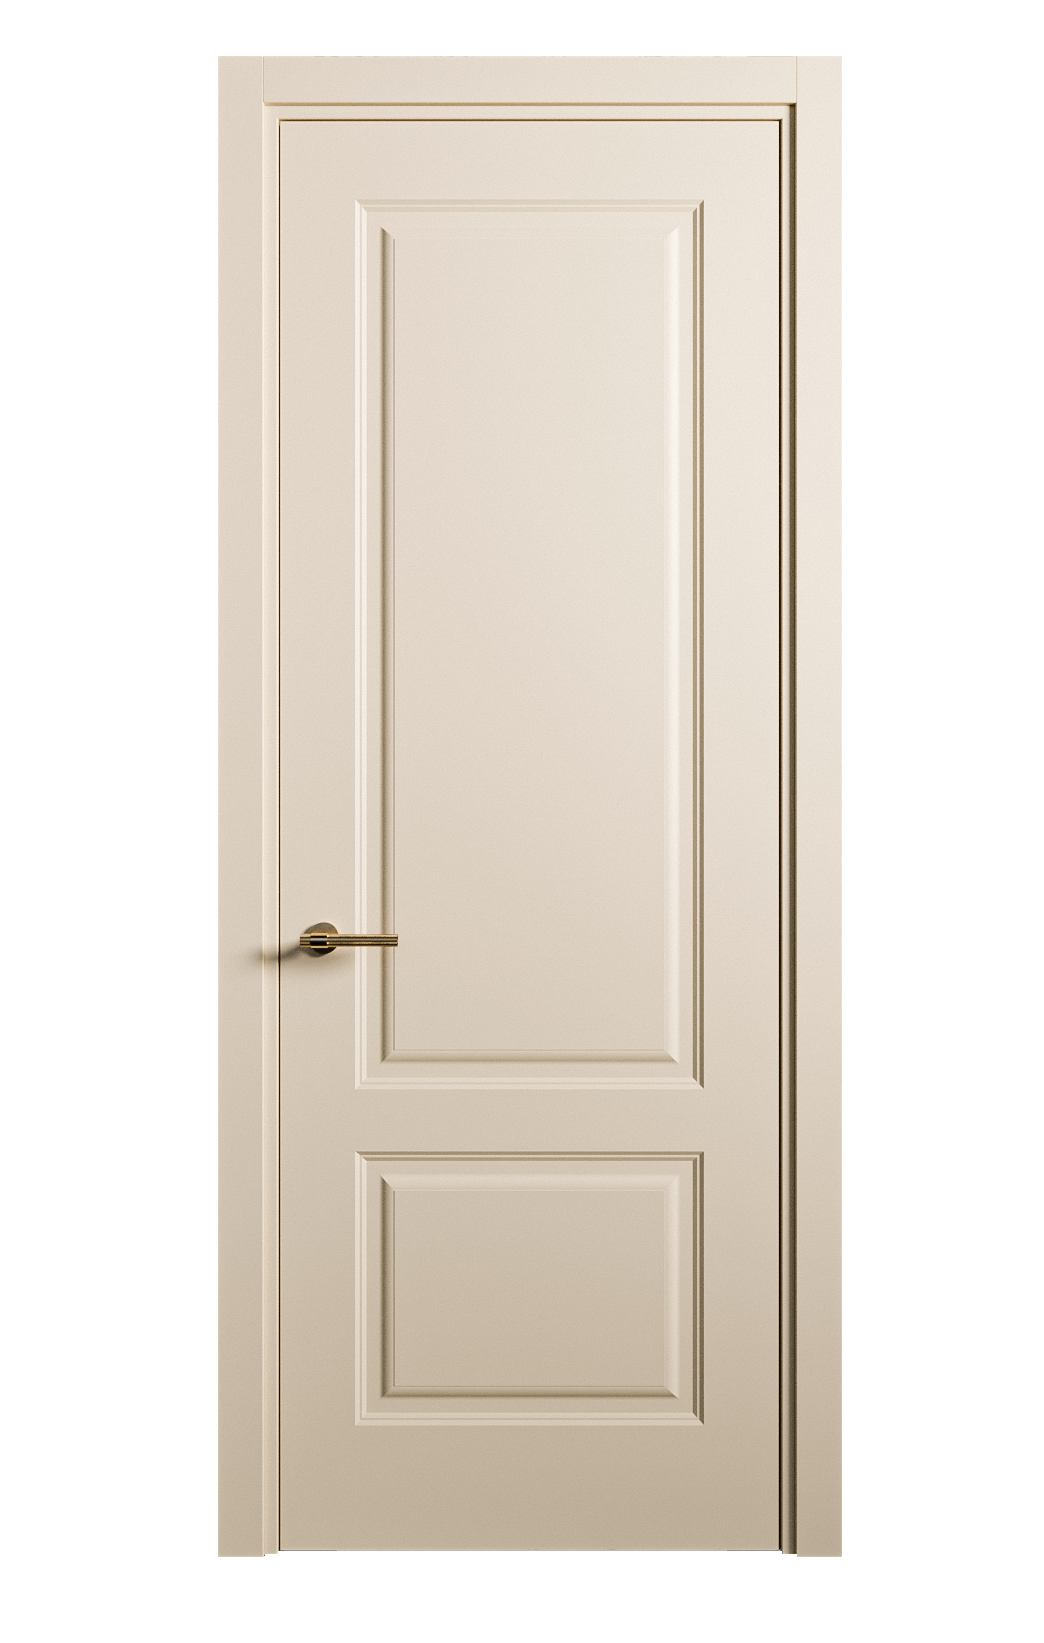 Межкомнатная дверь Вита-1 глухая эмаль ral 1015 26261